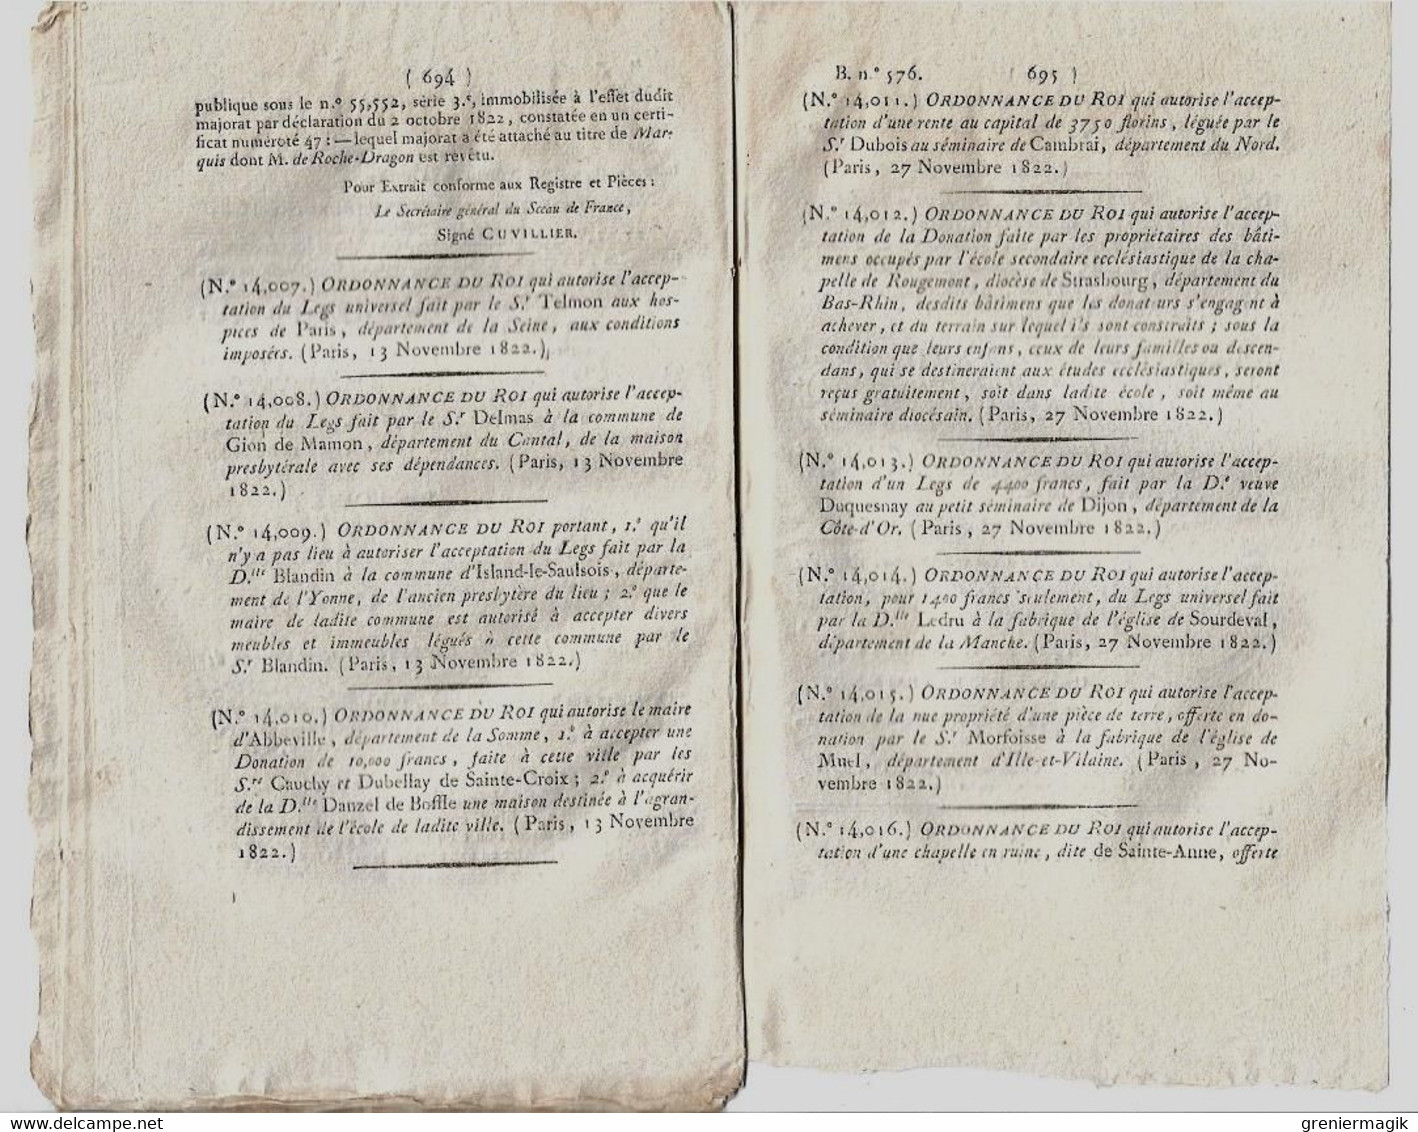 Bulletin des Lois N°576 1823 Paris taxe huiles vins vinaigres/Costumes présidents de Chambre/Anselme de Rochedragon